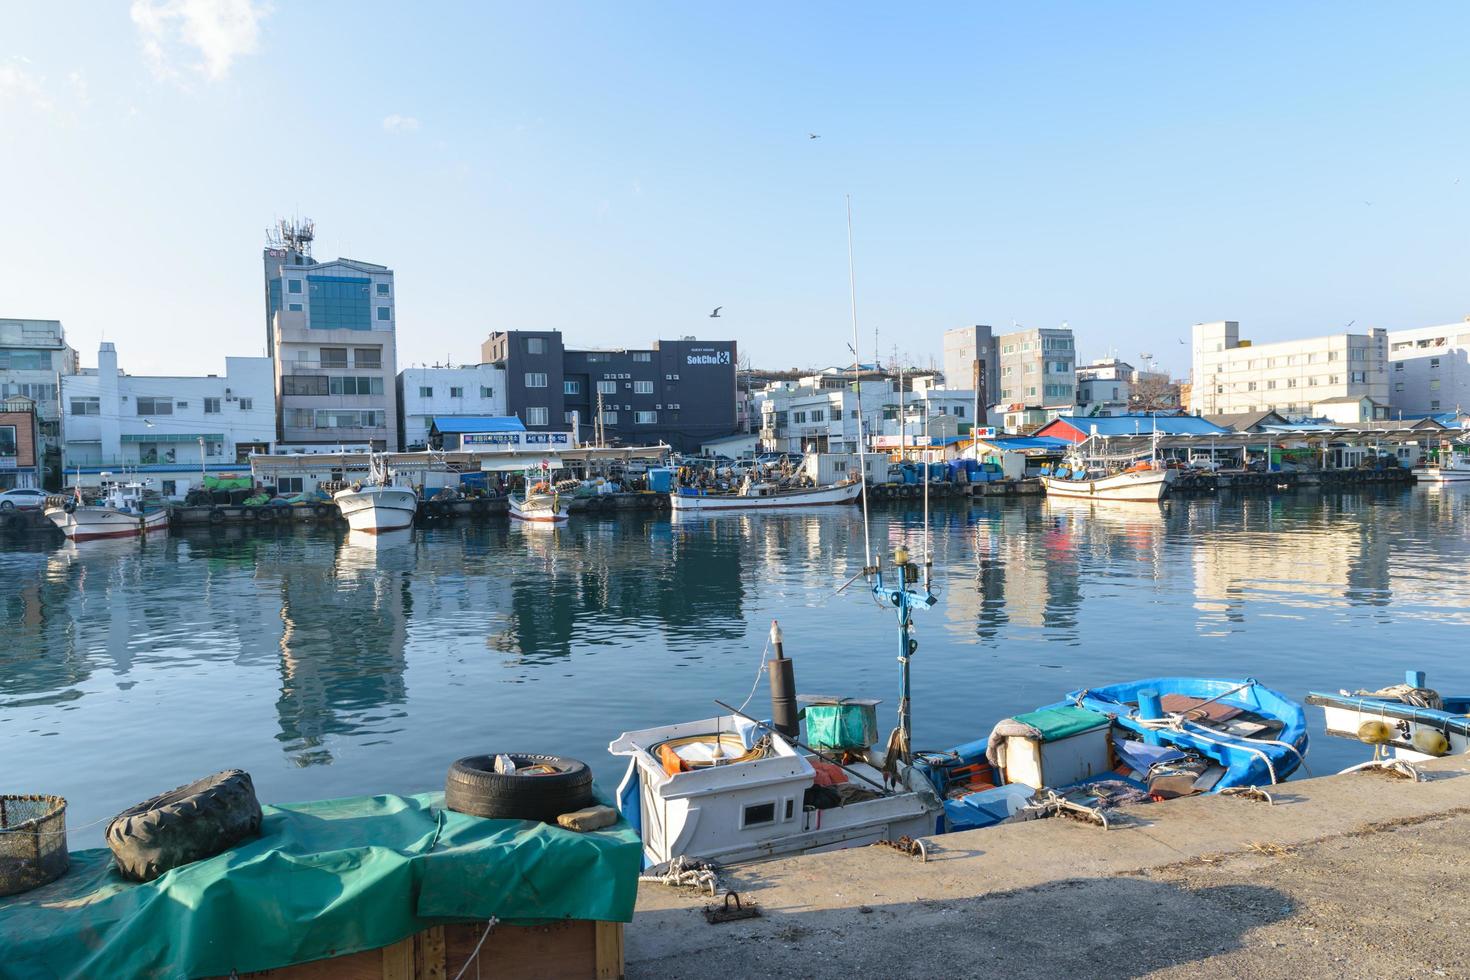 seoul, corea, 2 gennaio 2016 - barche da pesca ormeggiate foto